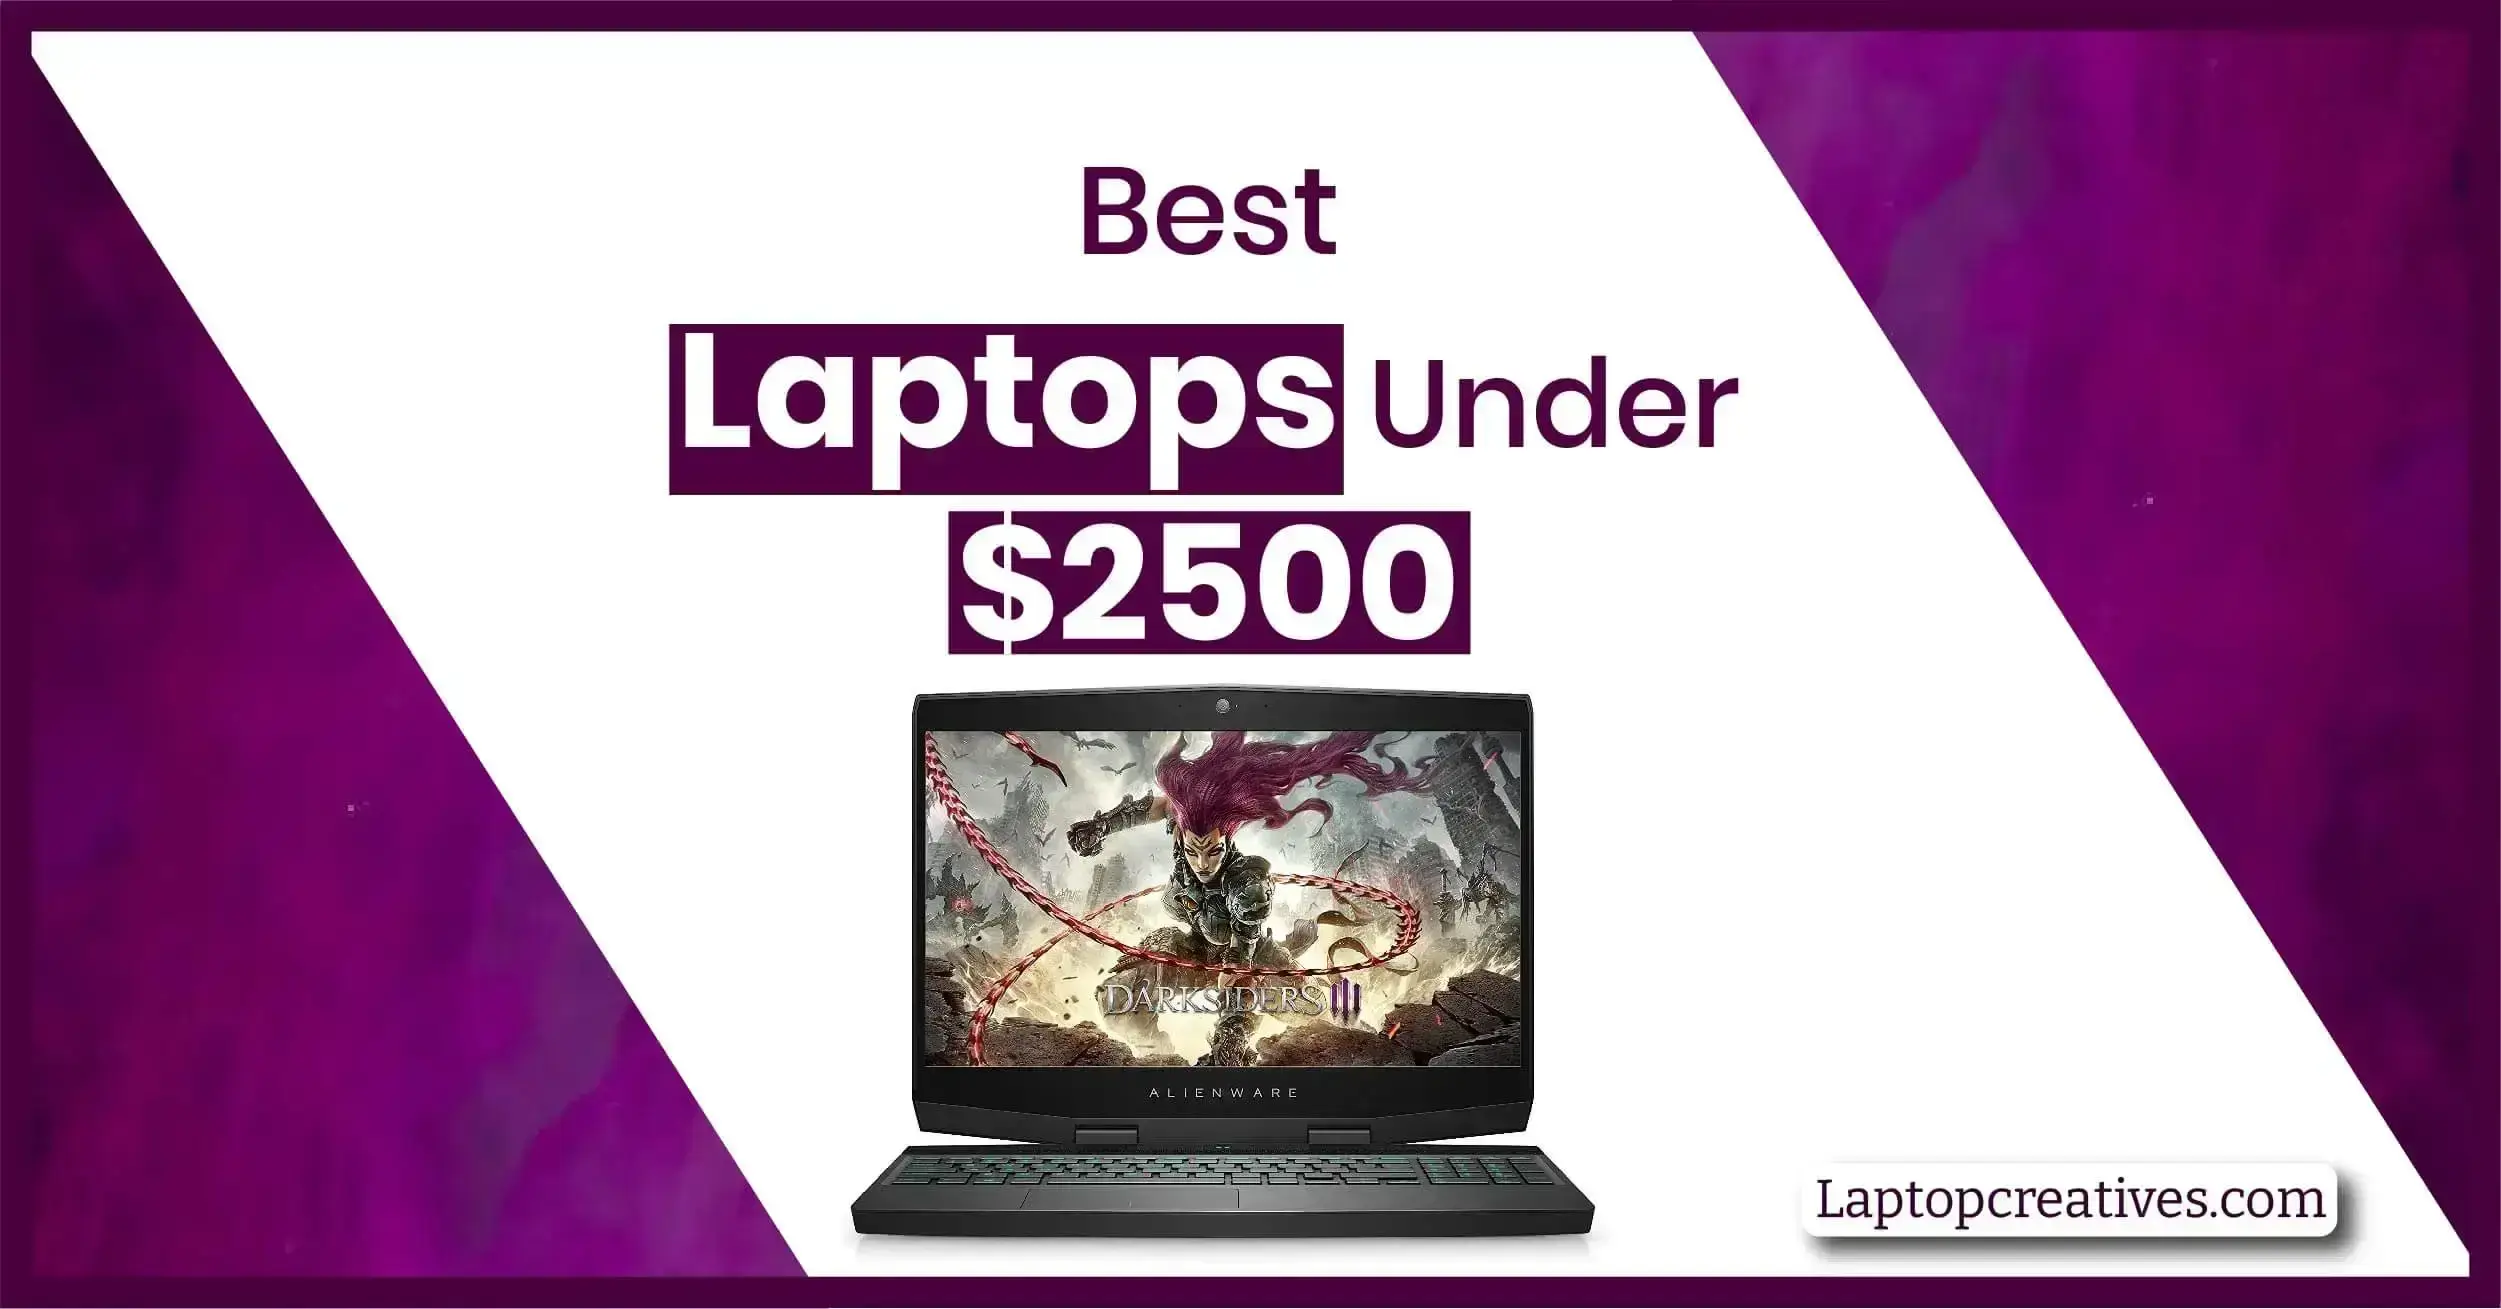 Best Laptops under $2500